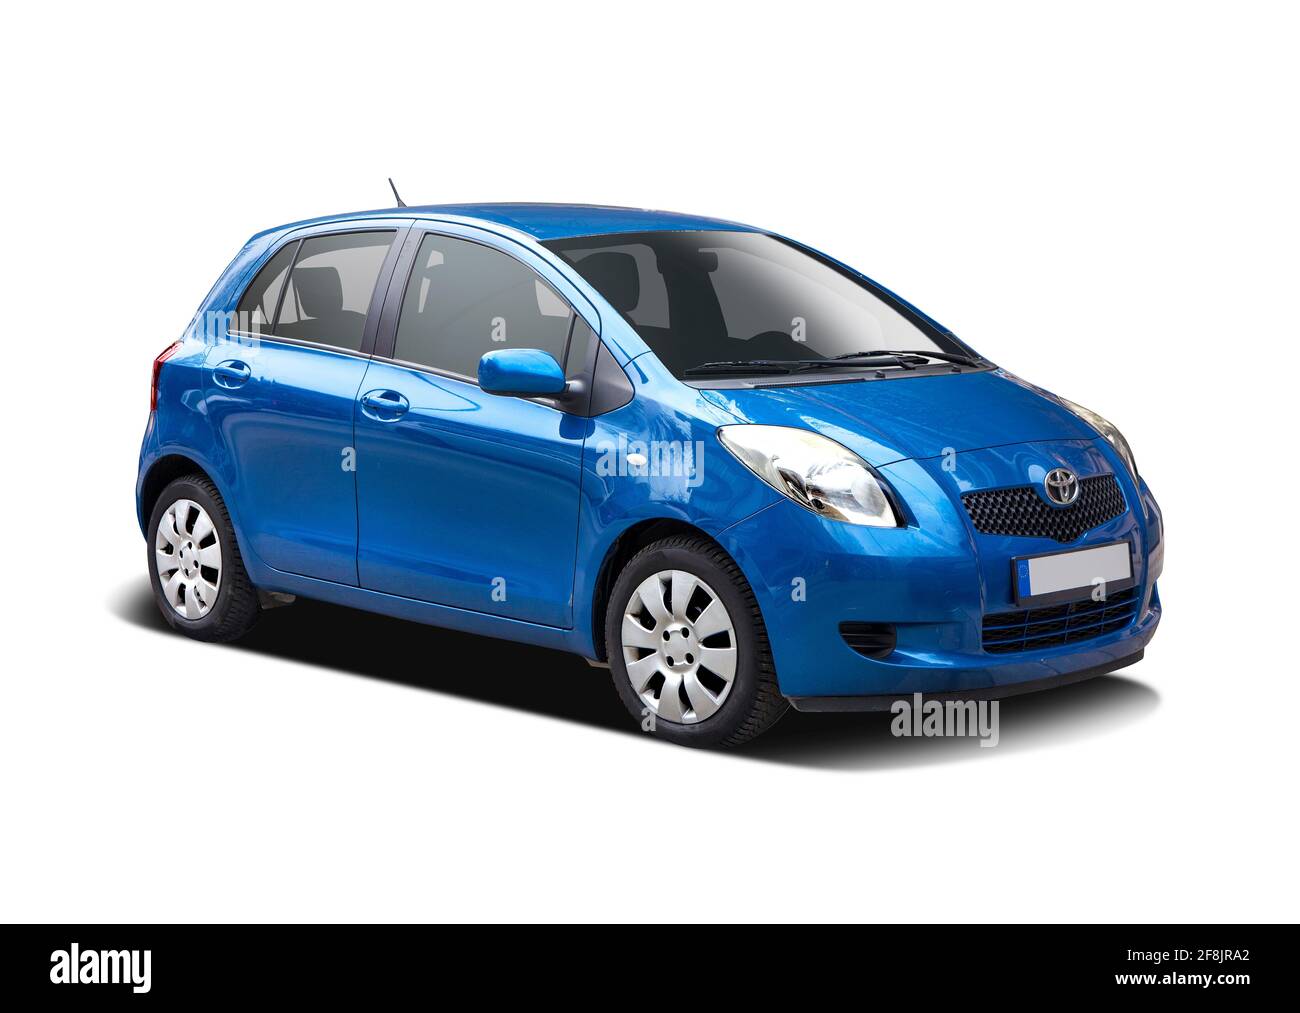 Toyota yaris blue immagini e fotografie stock ad alta risoluzione - Alamy